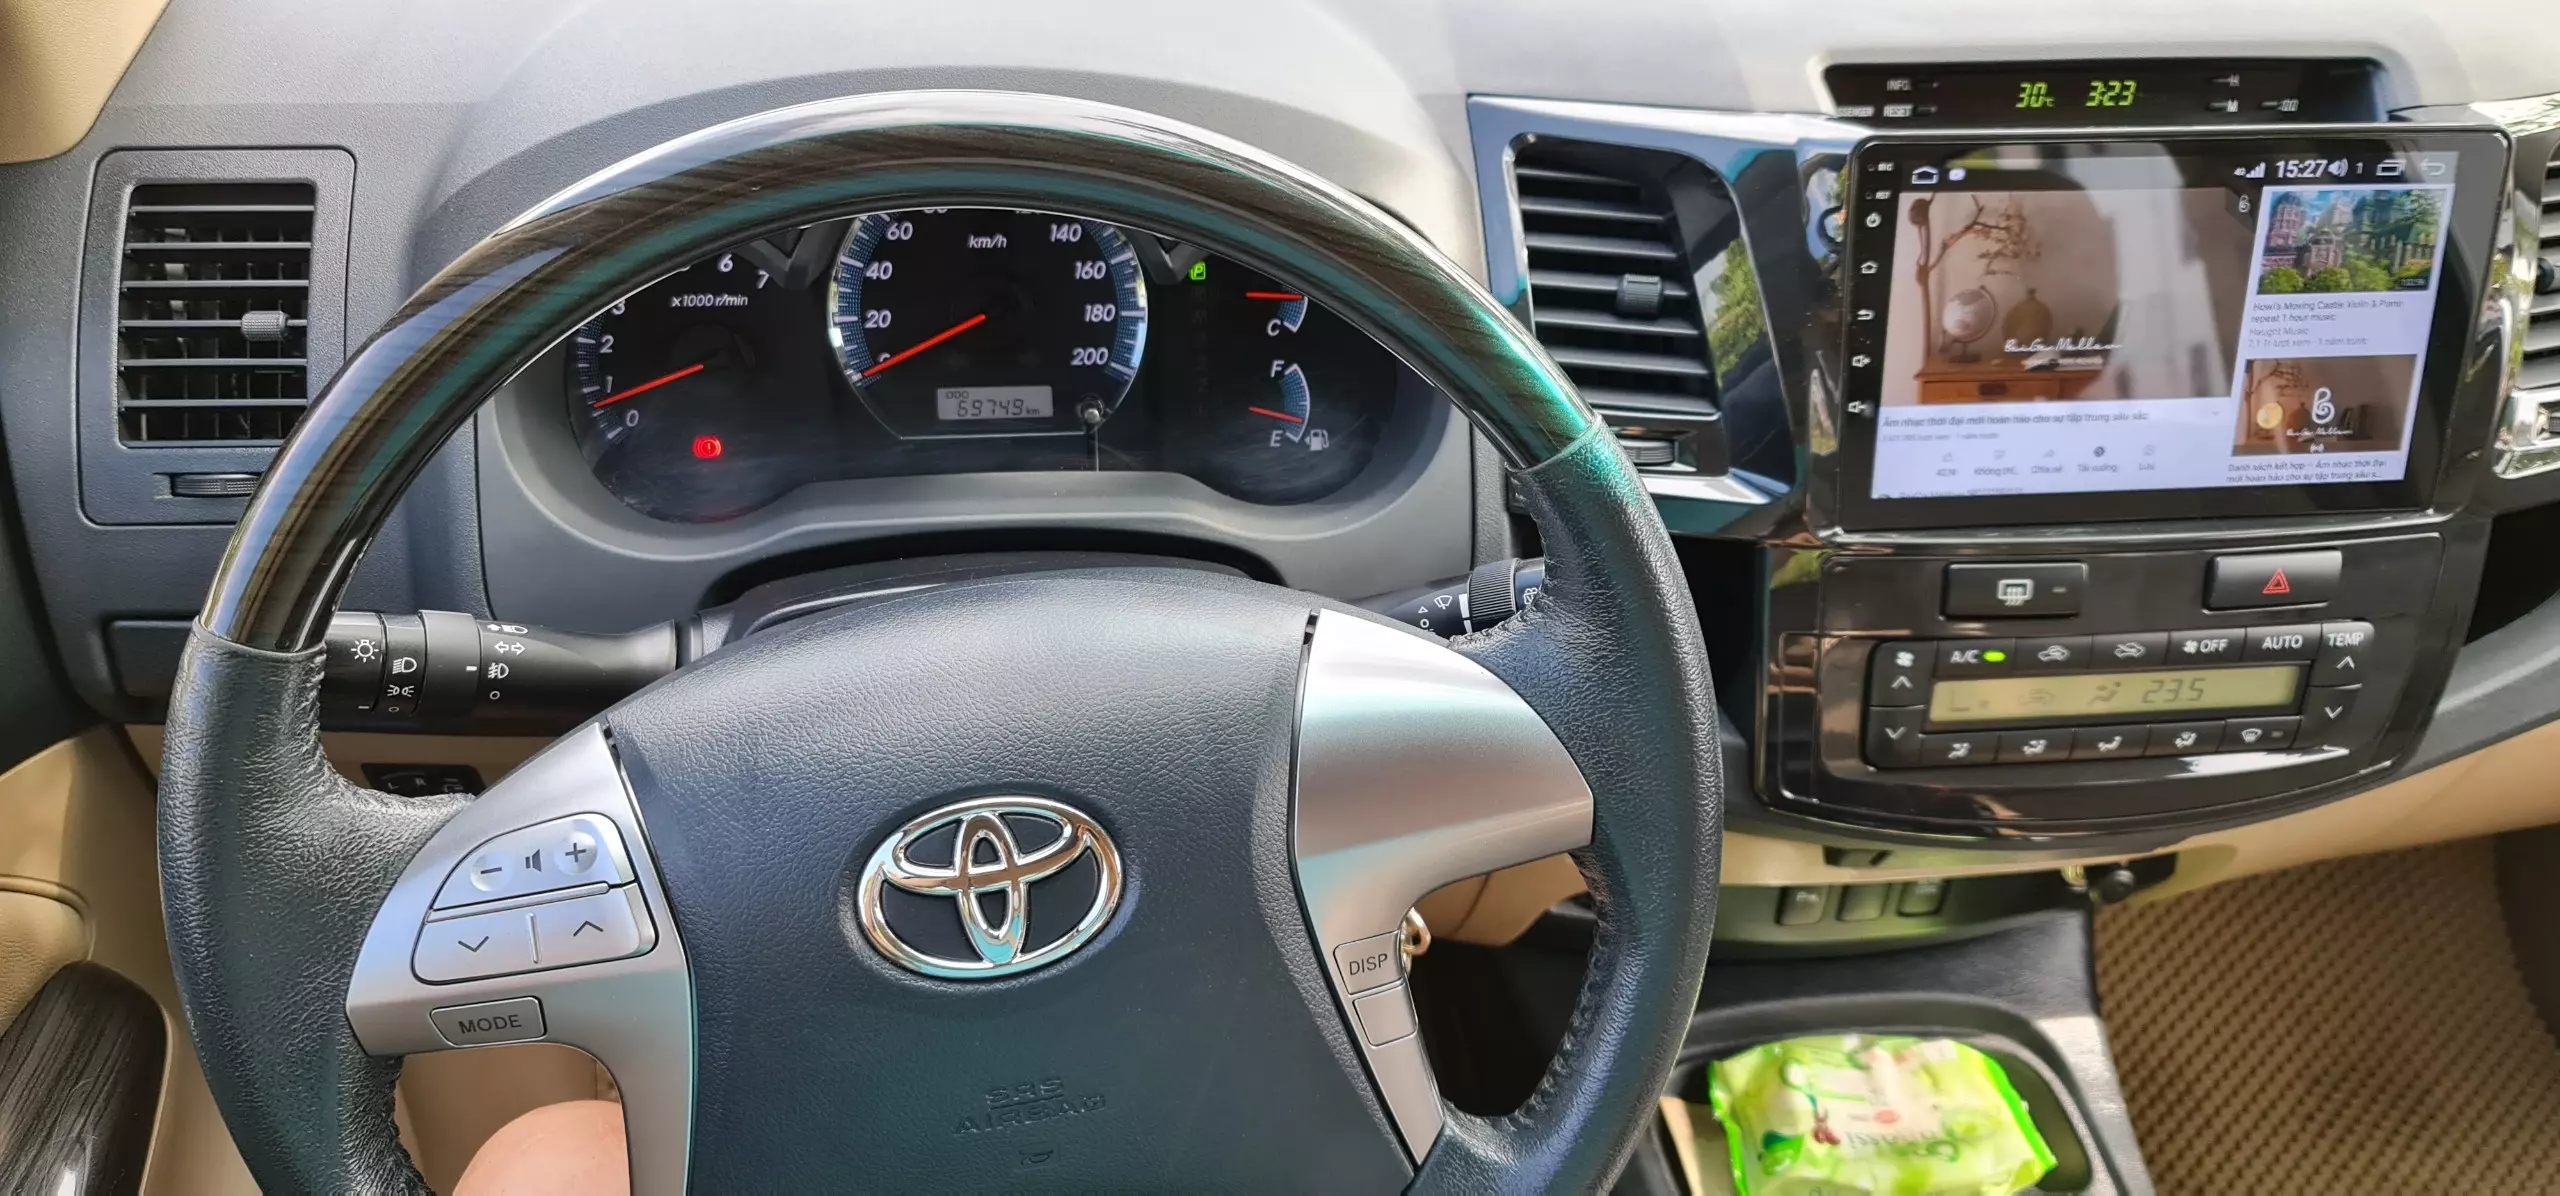 Chính chủ bán xe Toyota Fortuner đời 2015 màu đen nội thất kem, 2.7 một cầu máy xăng số tự động.-6